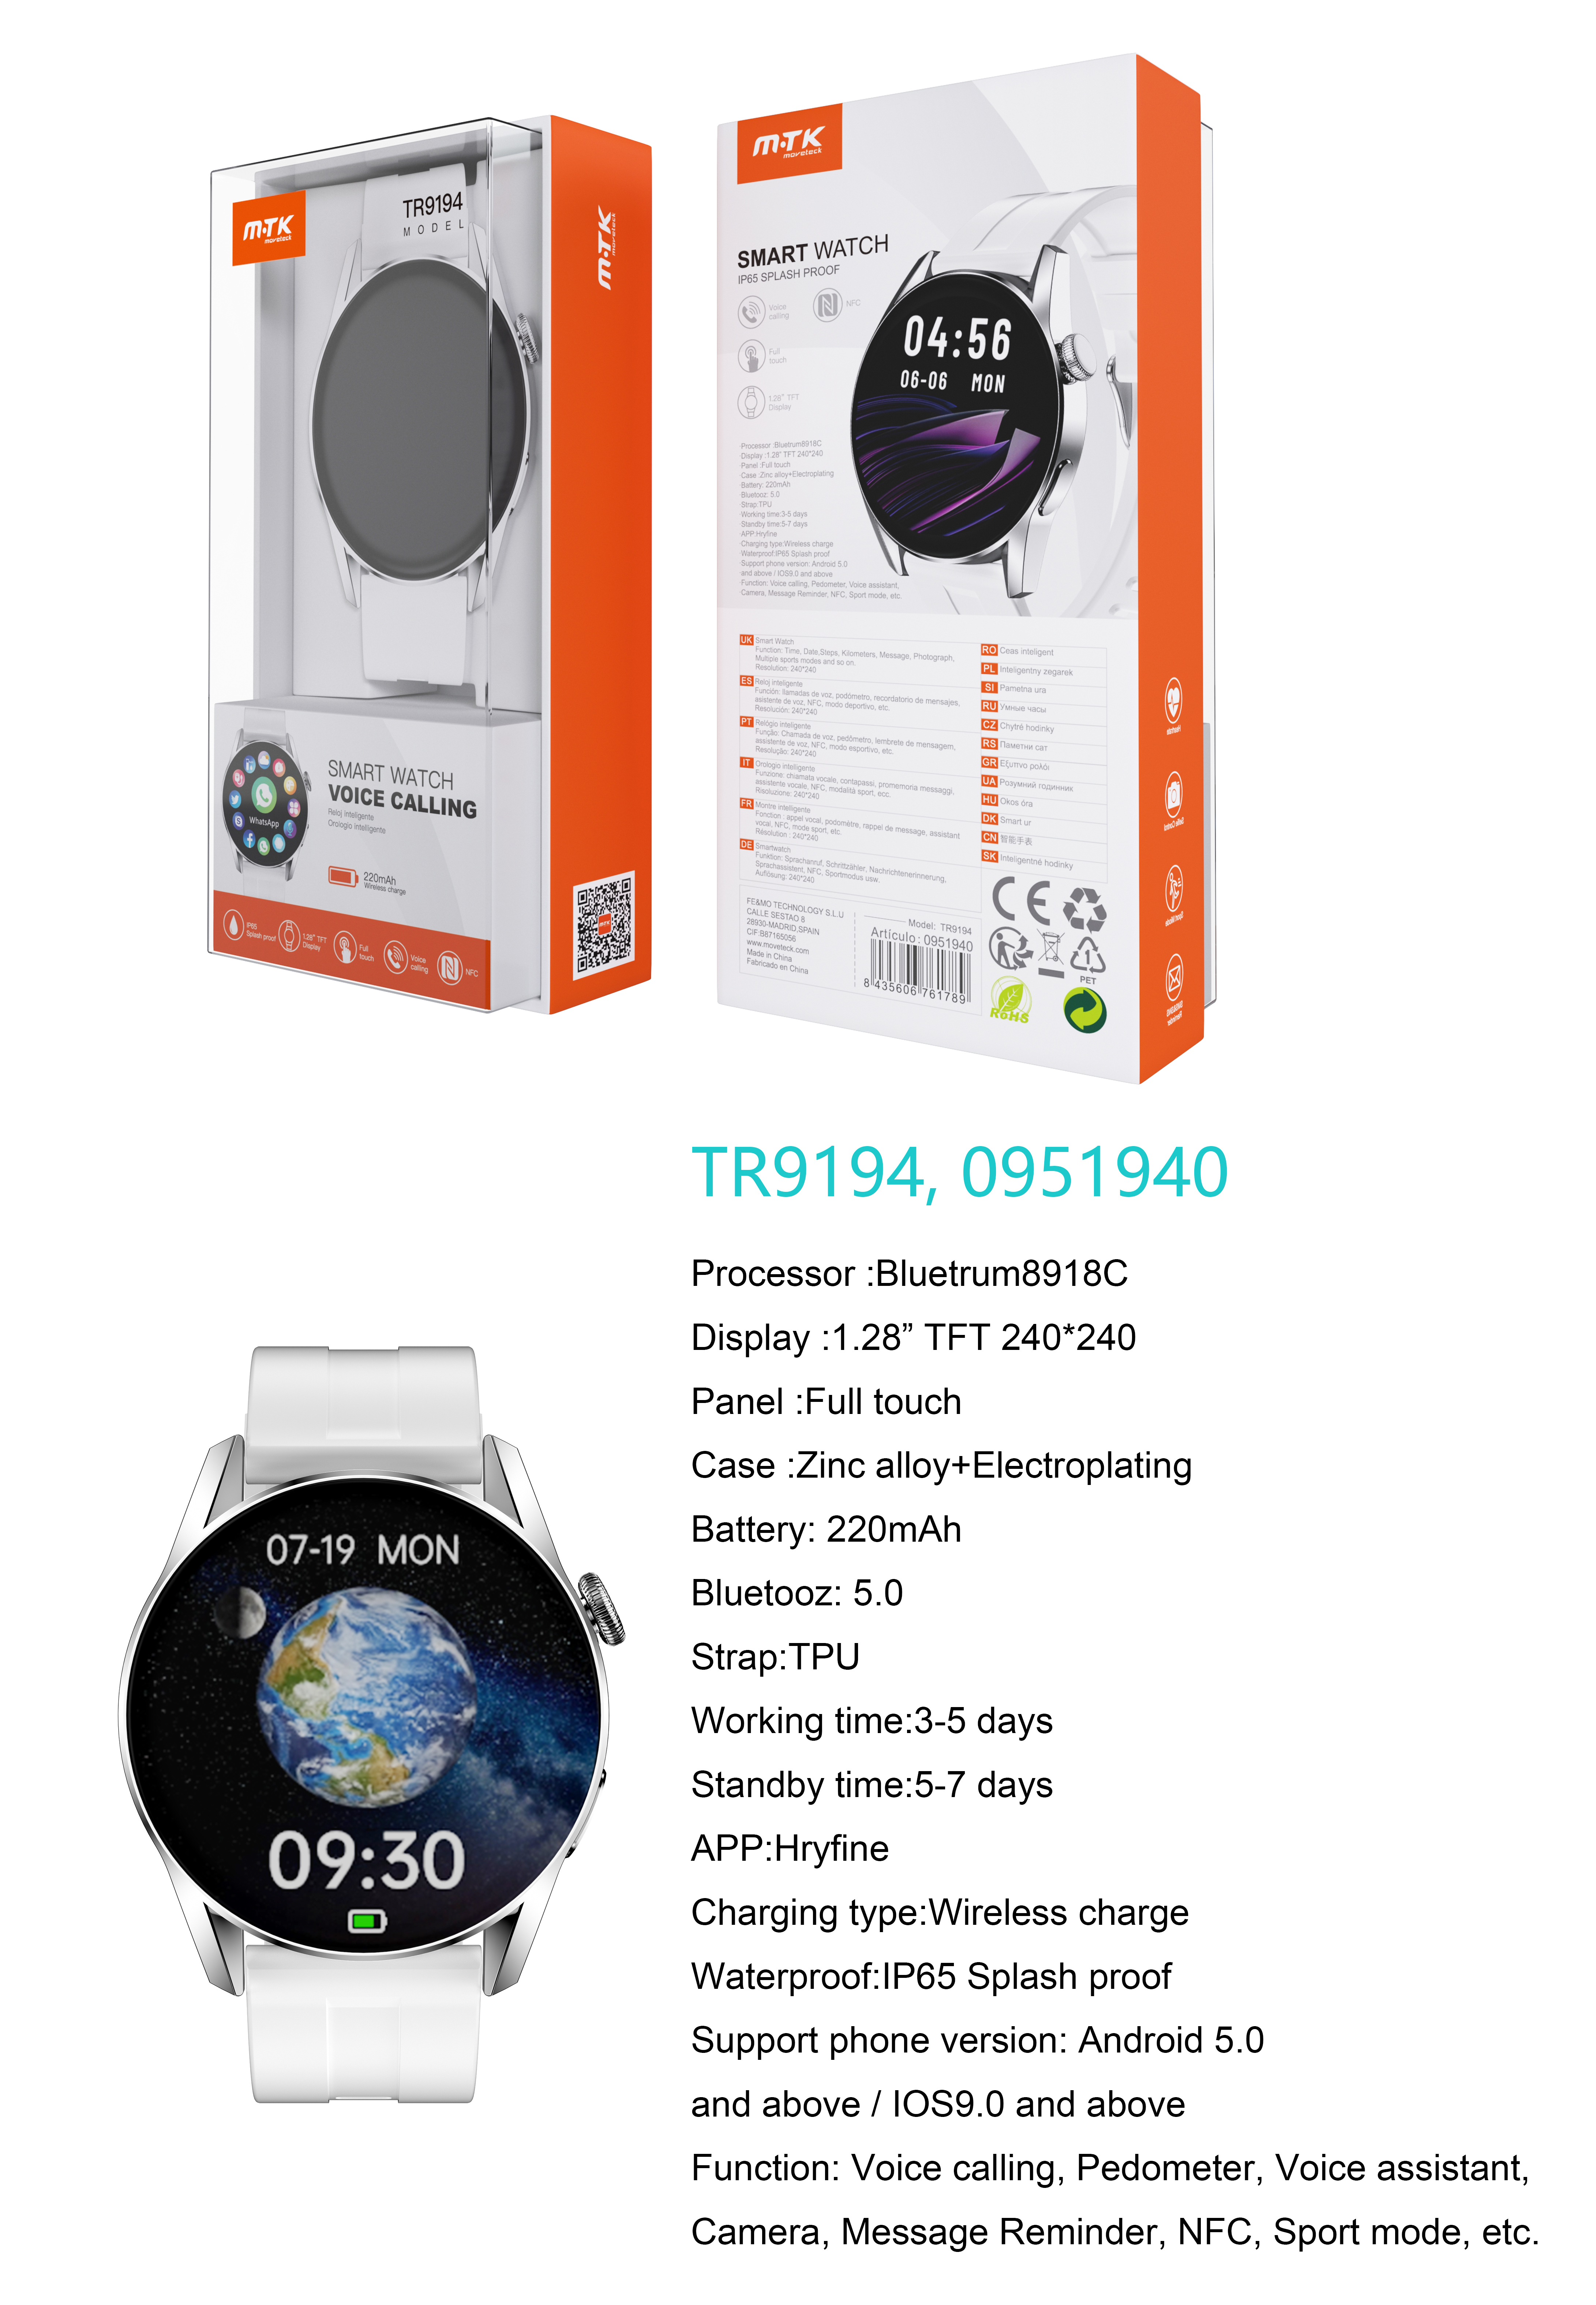 TR9194 BL Reloj Inteligente con bluetooth 5.0, Pantalla tactil de 1.28 pulgadas, Soporta NFC, llemadas, Asistente de Voz,Impermeable IP65, Bateria 220